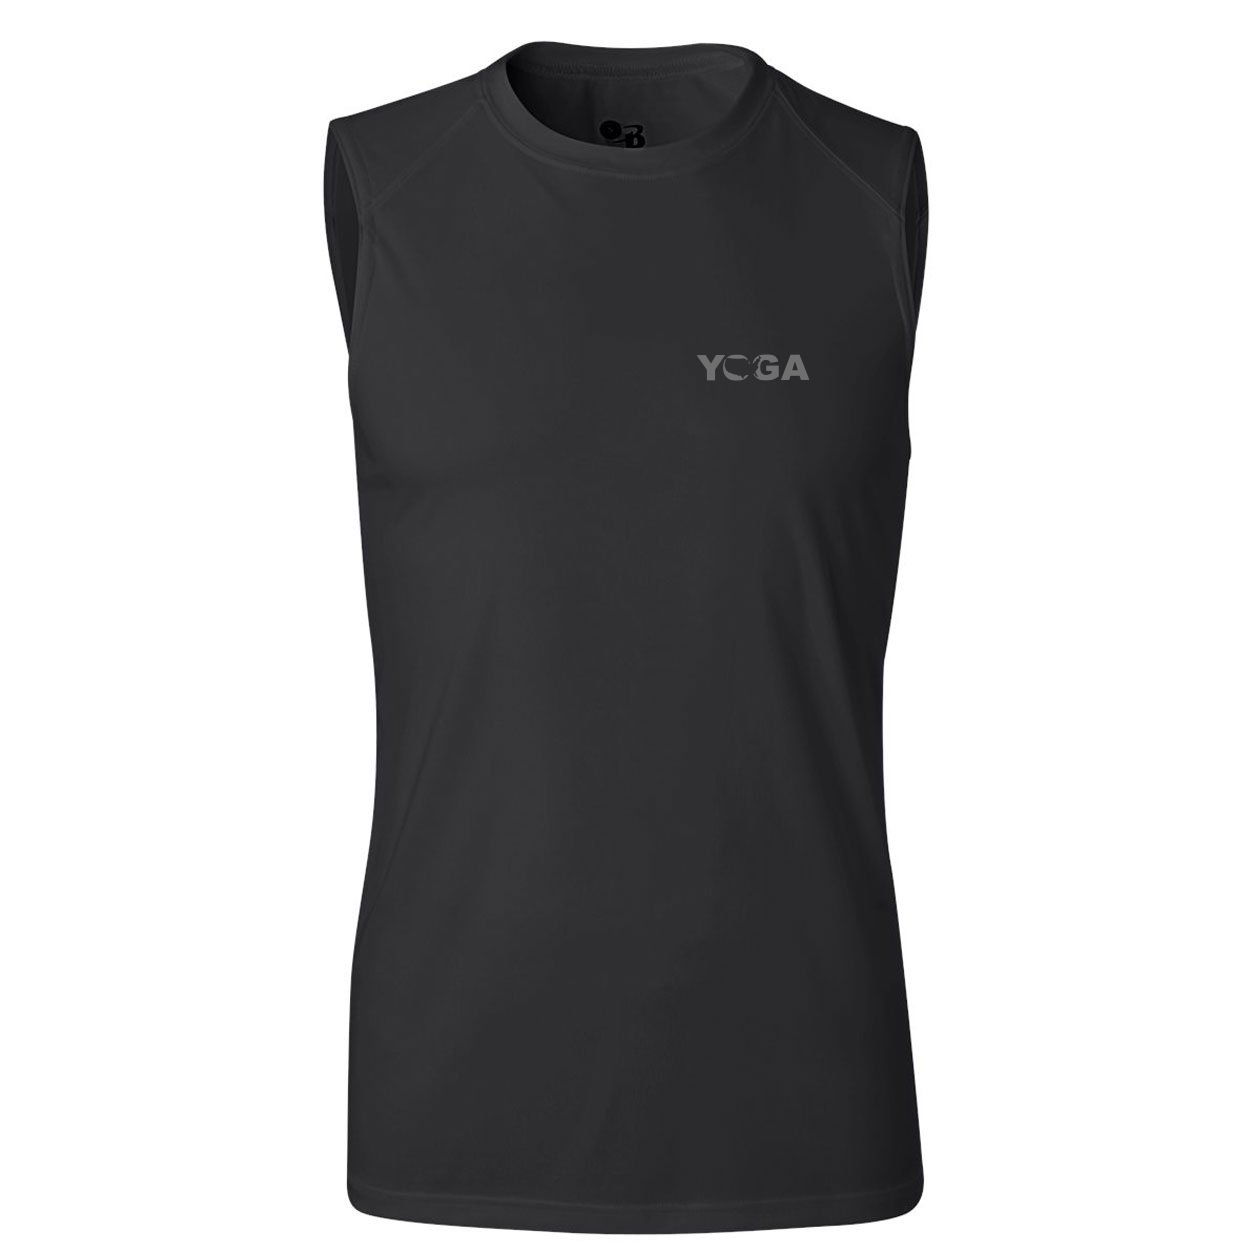 Yoga United States Night Out Unisex Performance Sleeveless T-Shirt Black (Gray Logo)